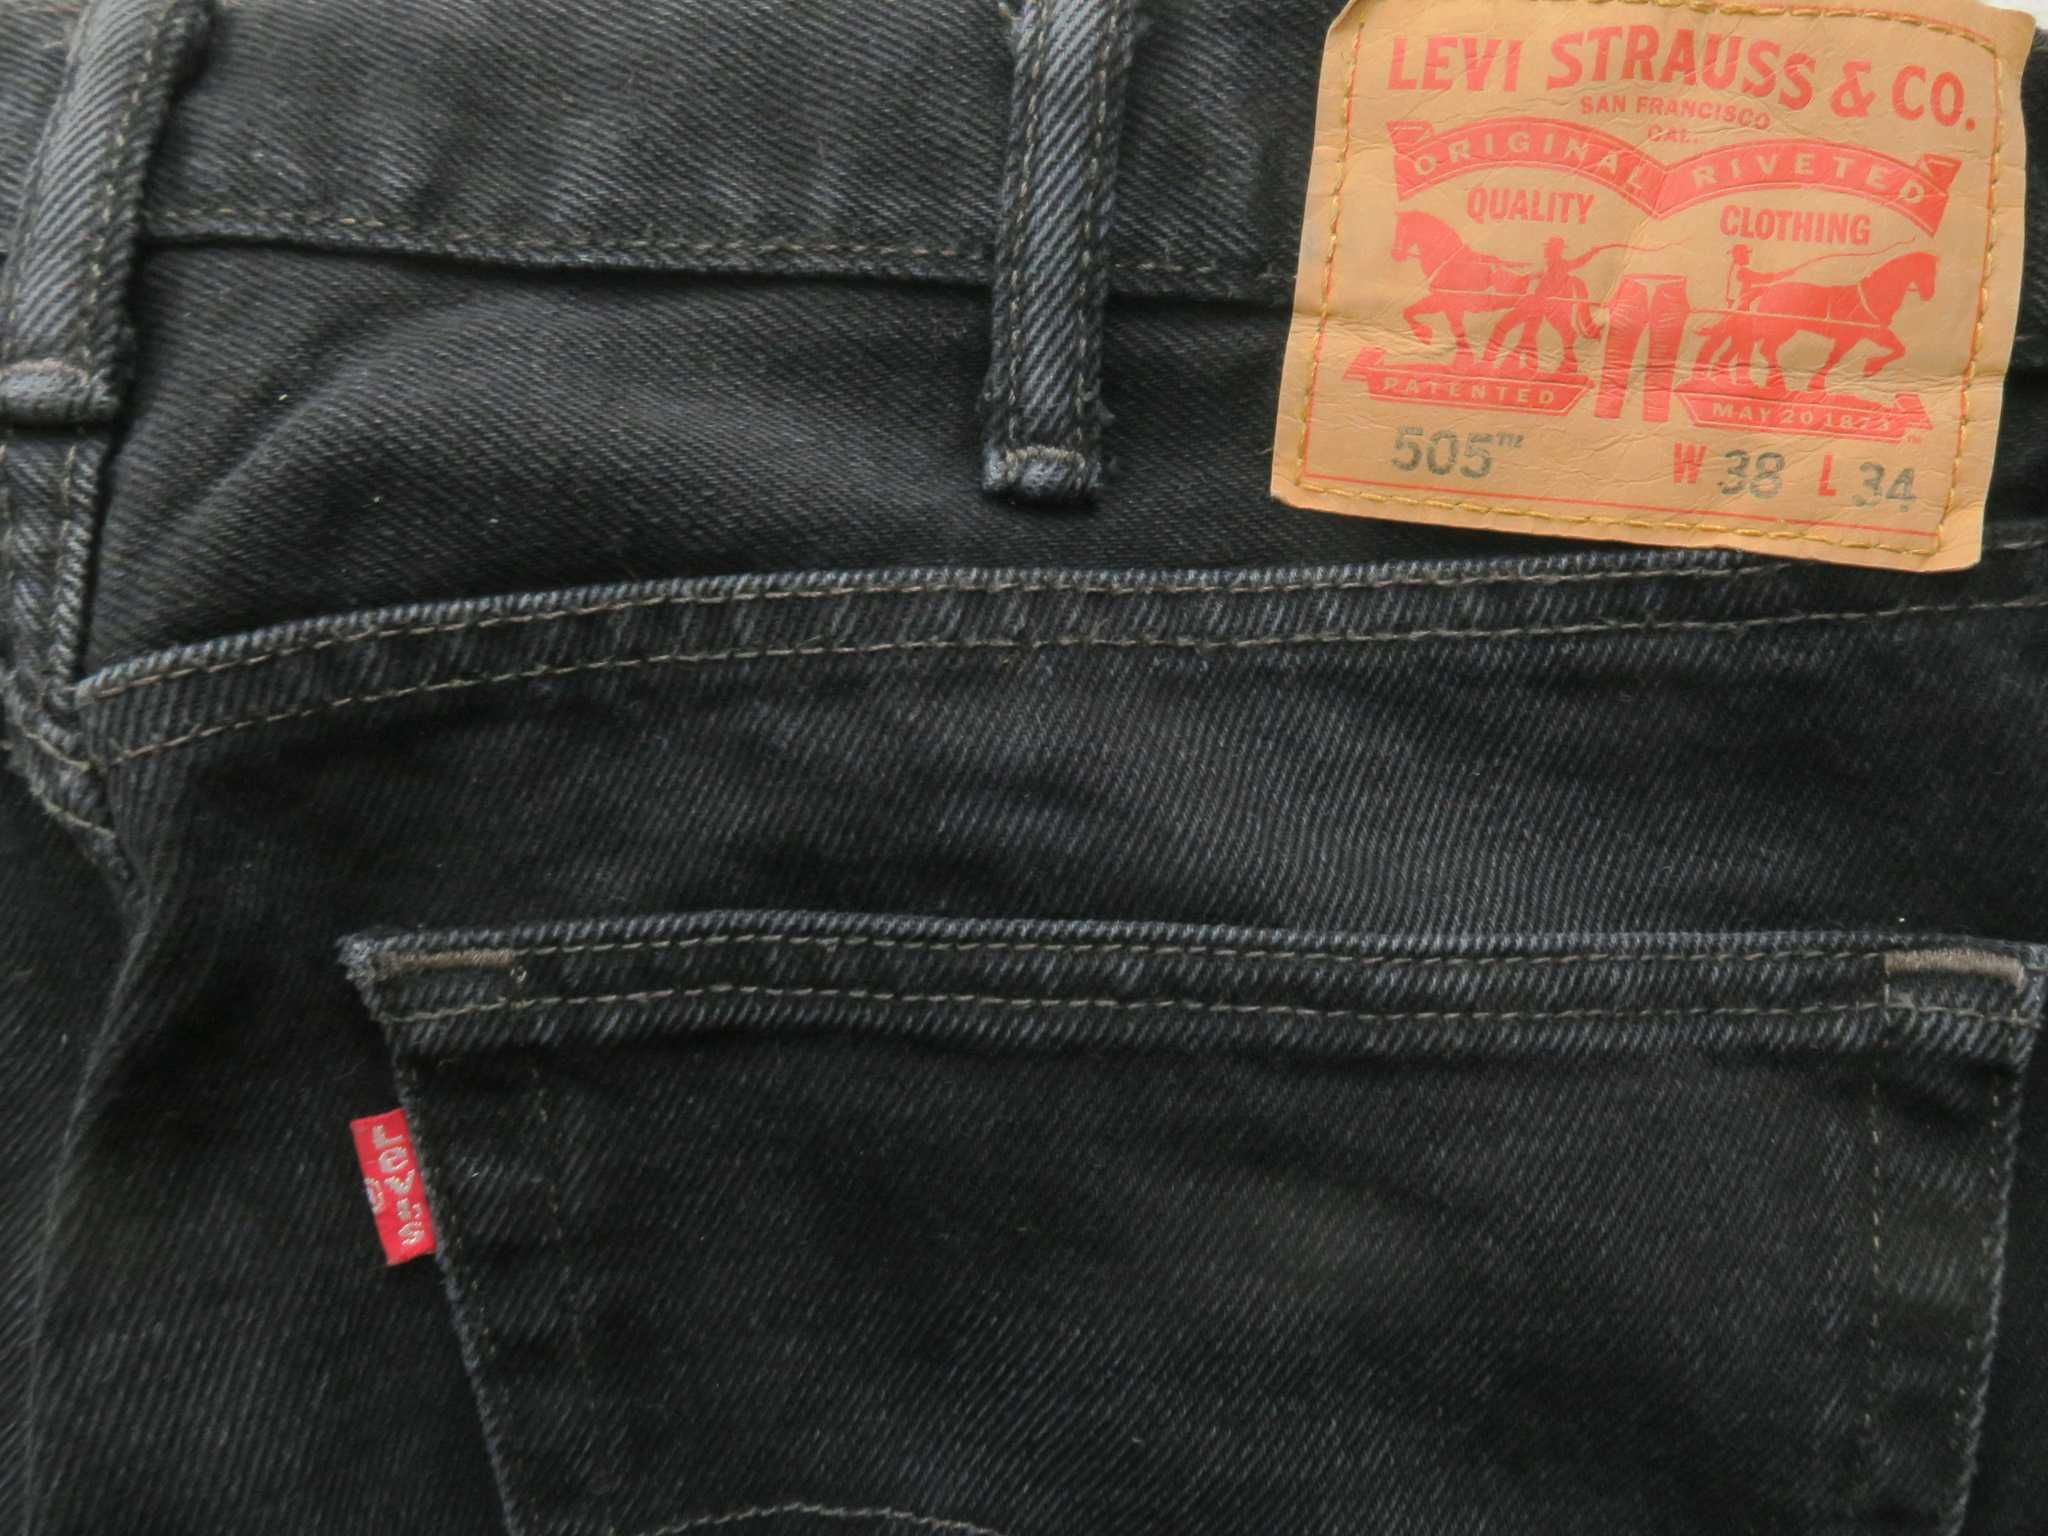 Levi's 505 spodnie jeansowe straight fit szeroka nogawka 38/34